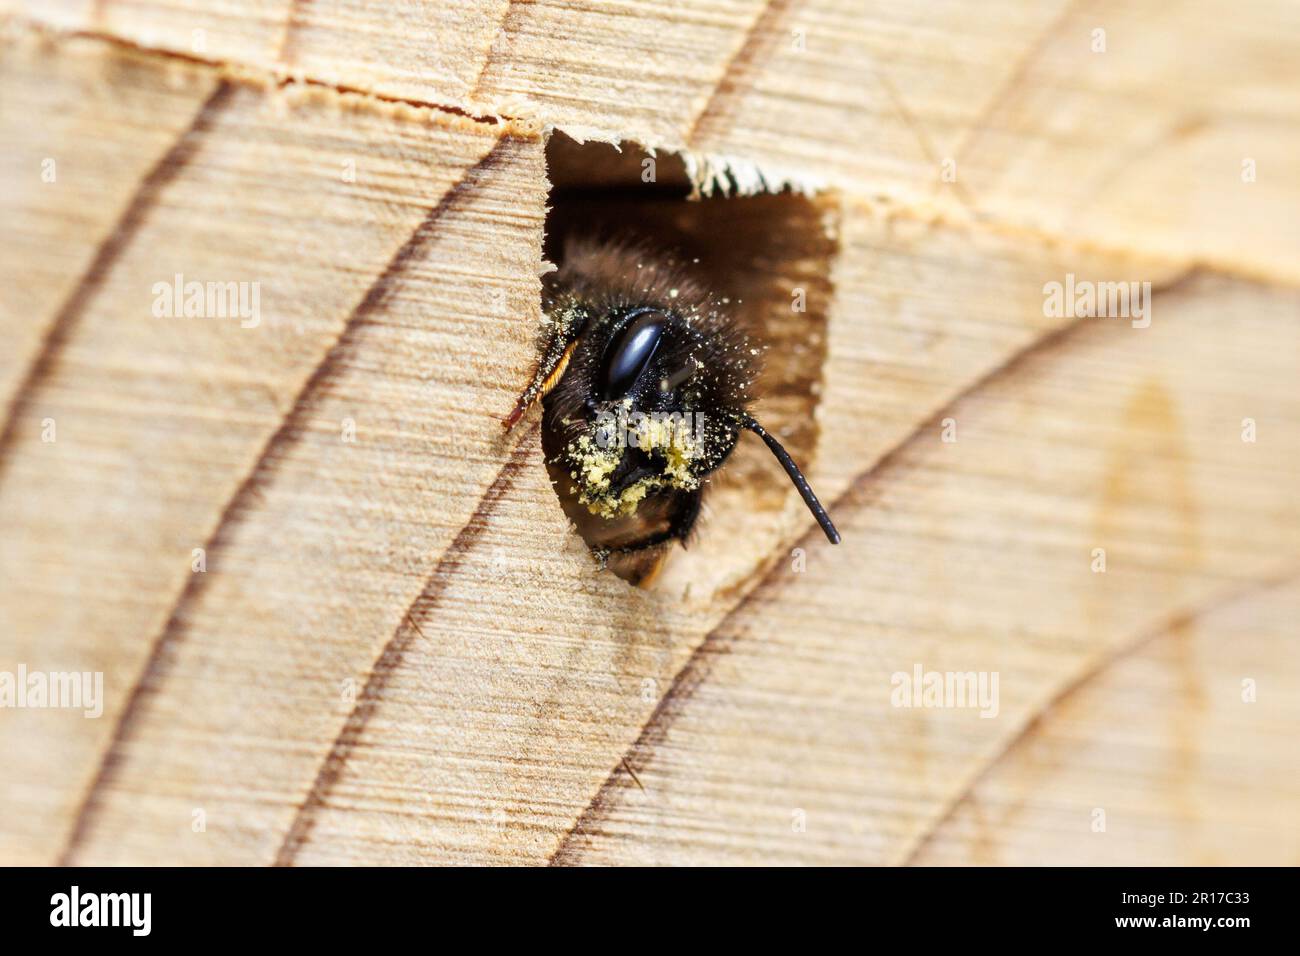 Une abeille rouge, Osmia bicornis, dans une maison d'abeilles, les maisons permettent aux abeilles solitaires un endroit pour déposer les larves qu'elles couvrent ensuite de boue. Sussex, Royaume-Uni Banque D'Images